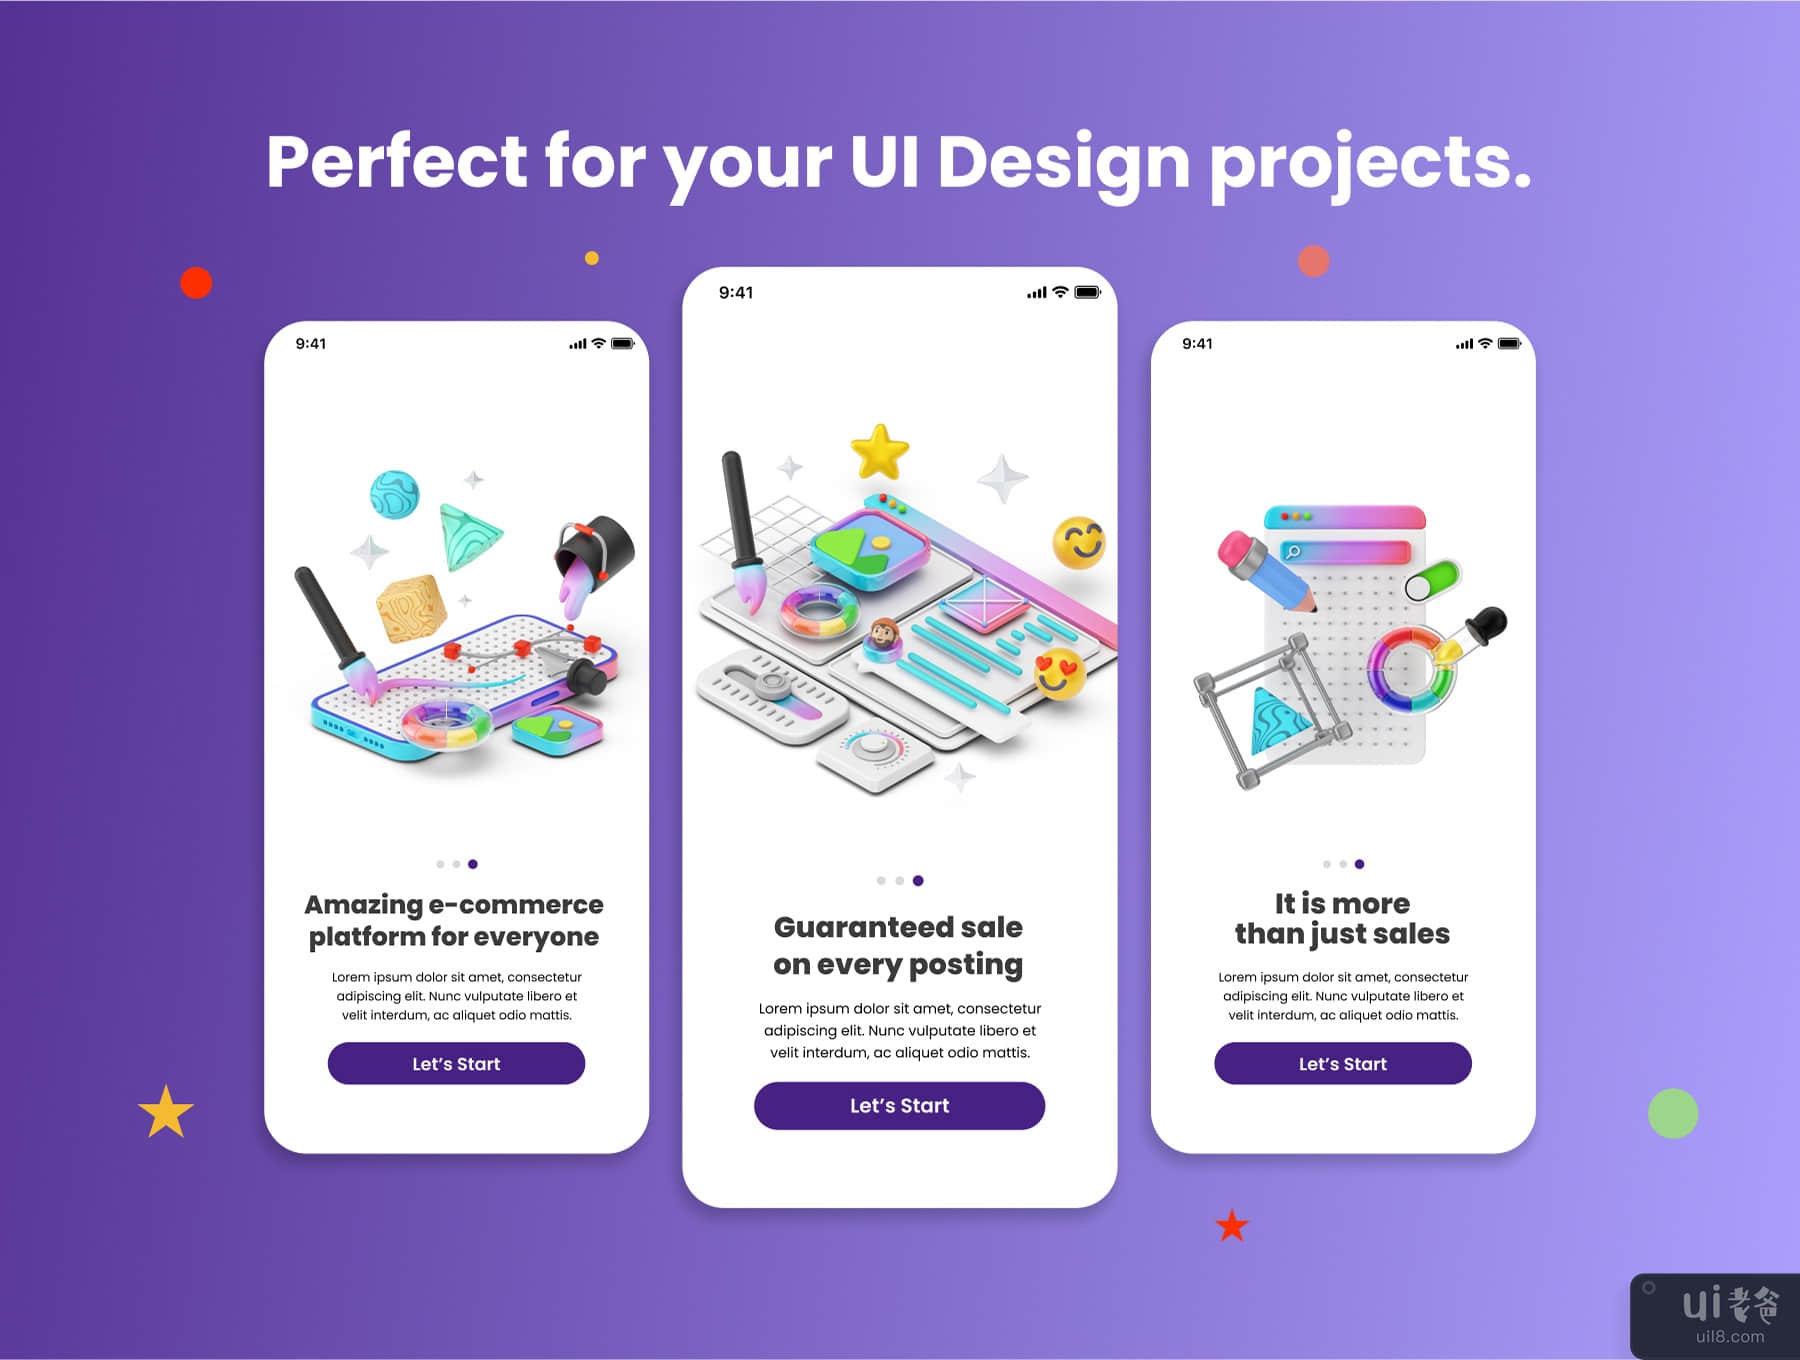 用户界面和平面设计 3D 图标和插图包 (User Interface And Graphic Design 3D Icon & illustration pack)插图4